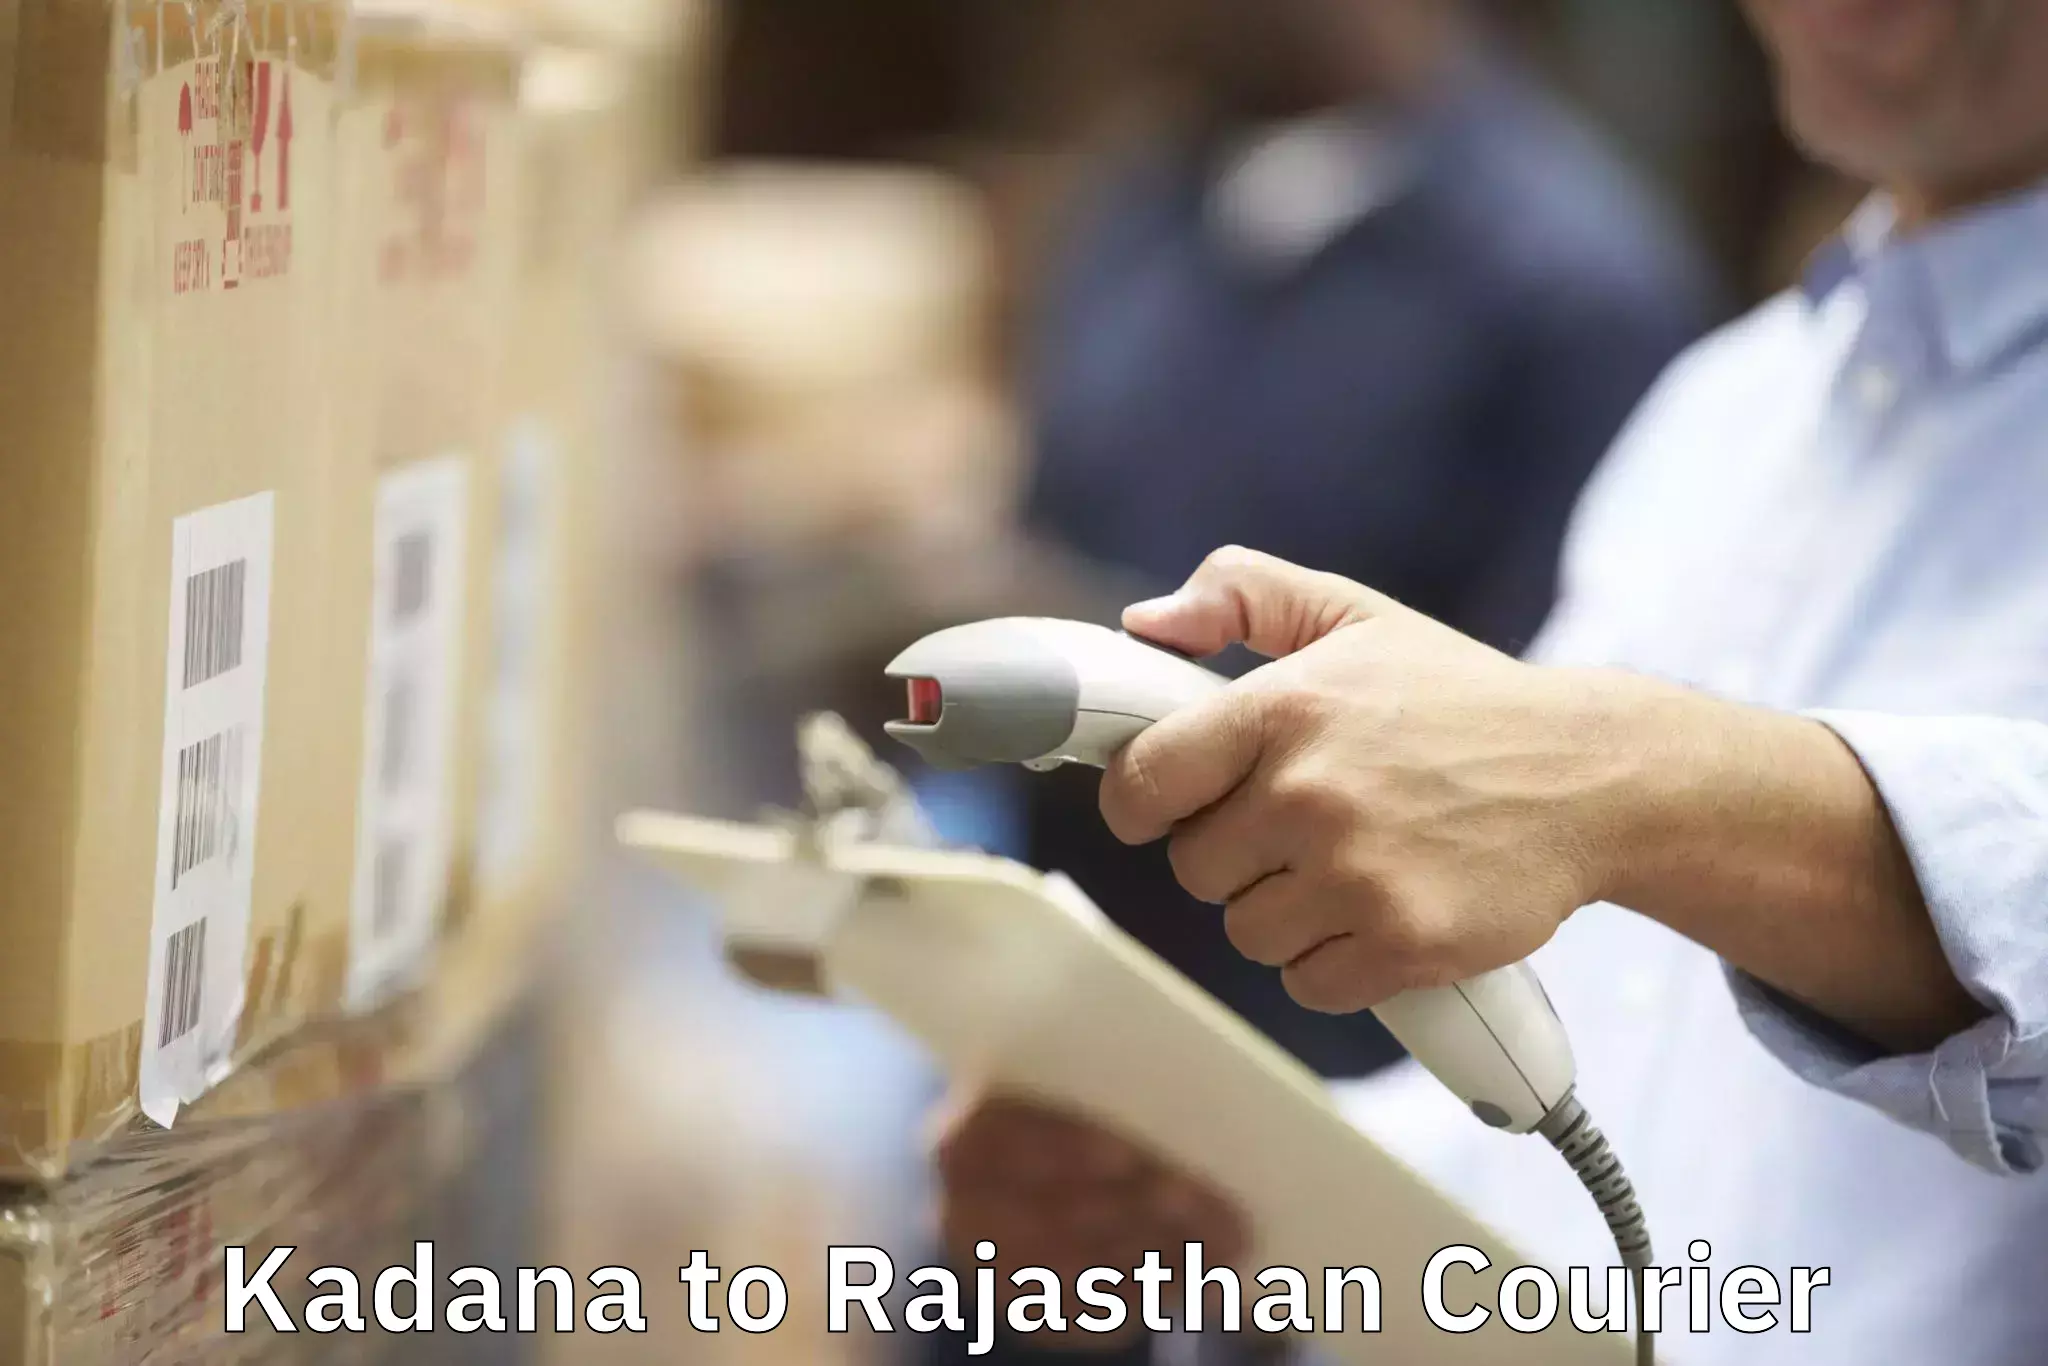 Professional moving assistance Kadana to Laxmangarh